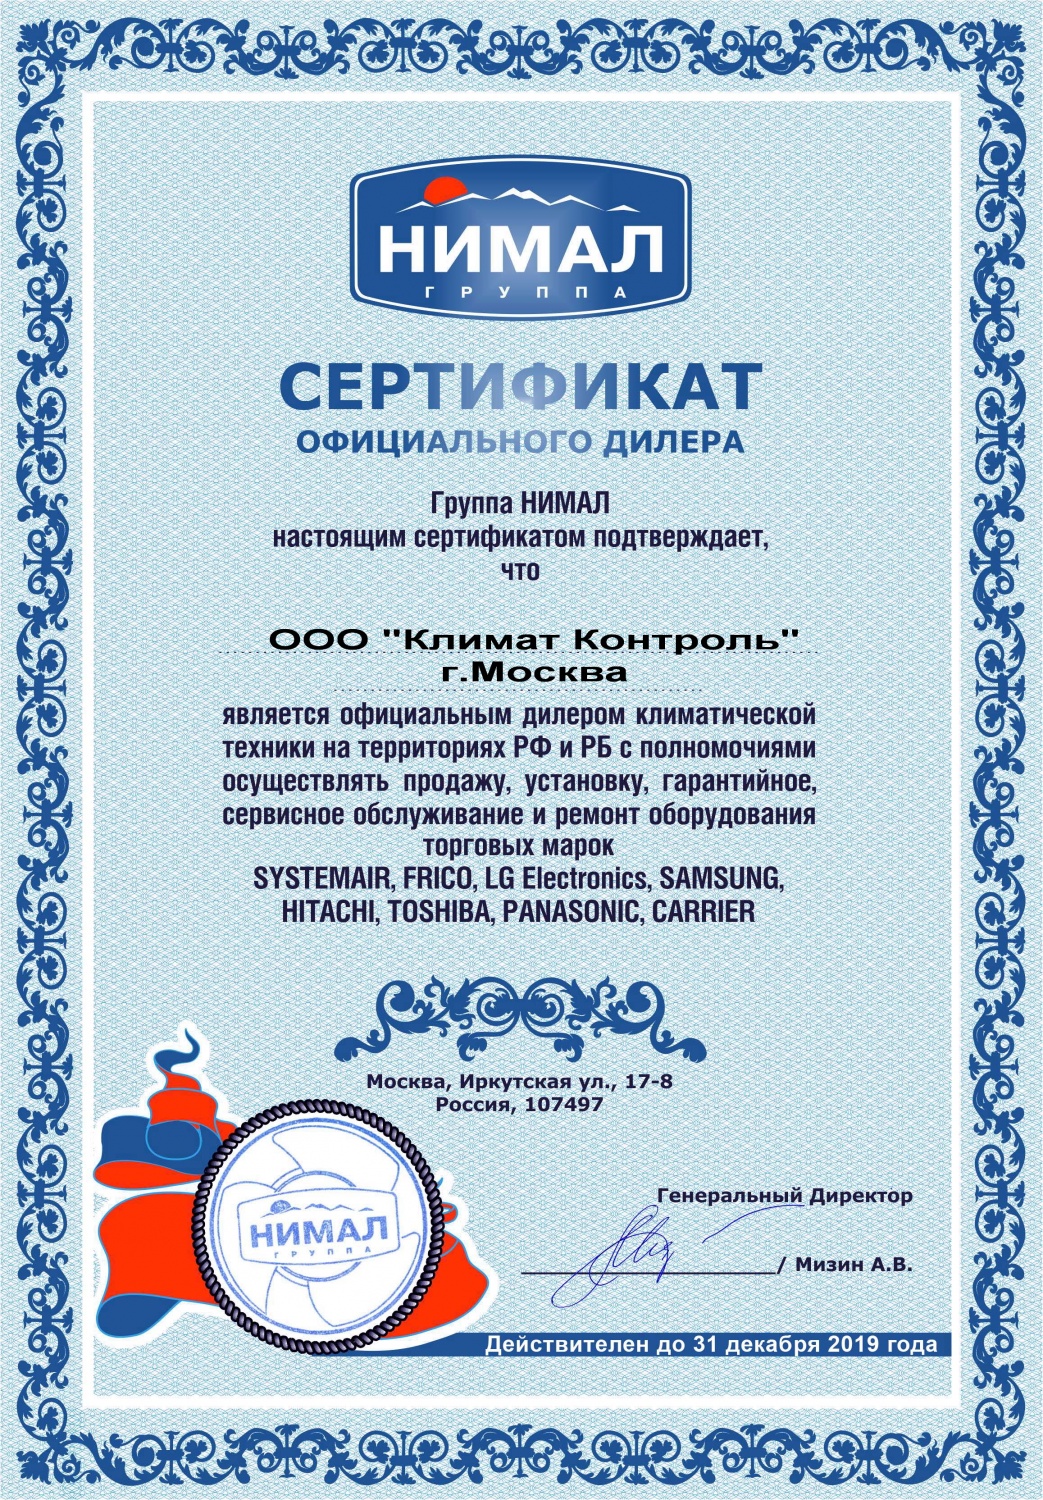 Сертификат официального дилера НИМАЛ-